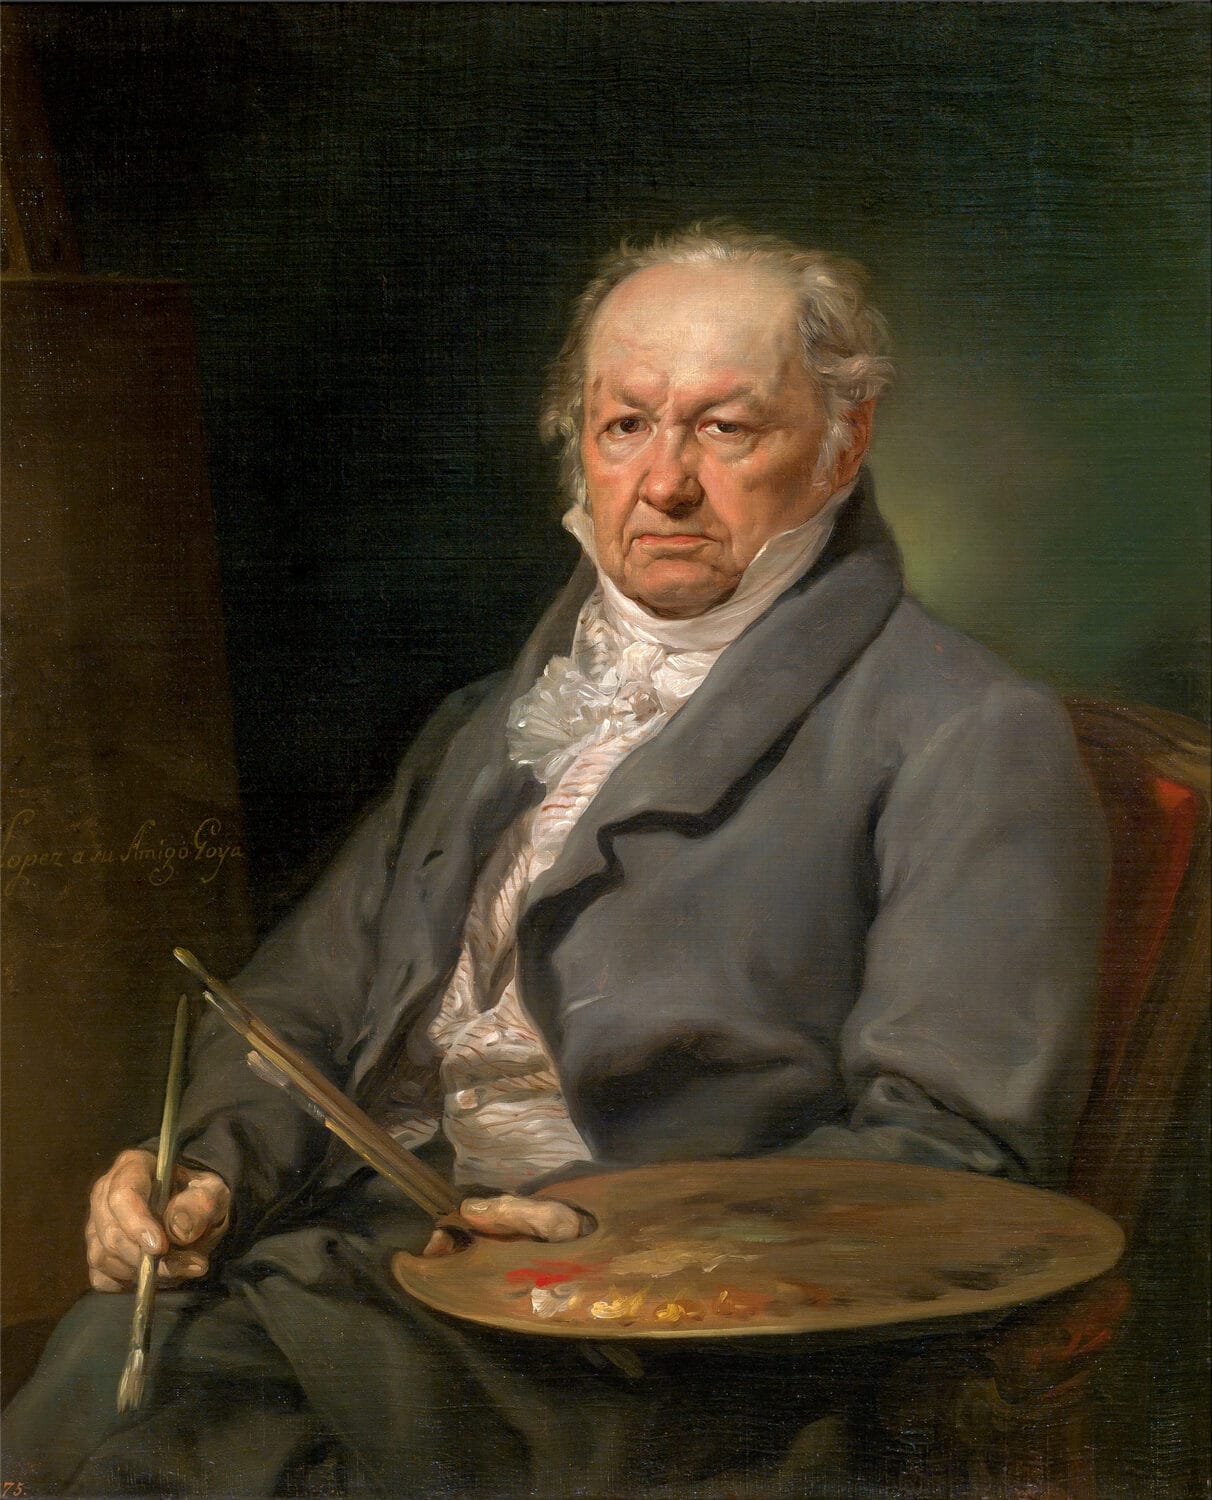 Portrait du peintre Francisco de Goya (1826), par Vicente López, Musée du Prado, Madrid.